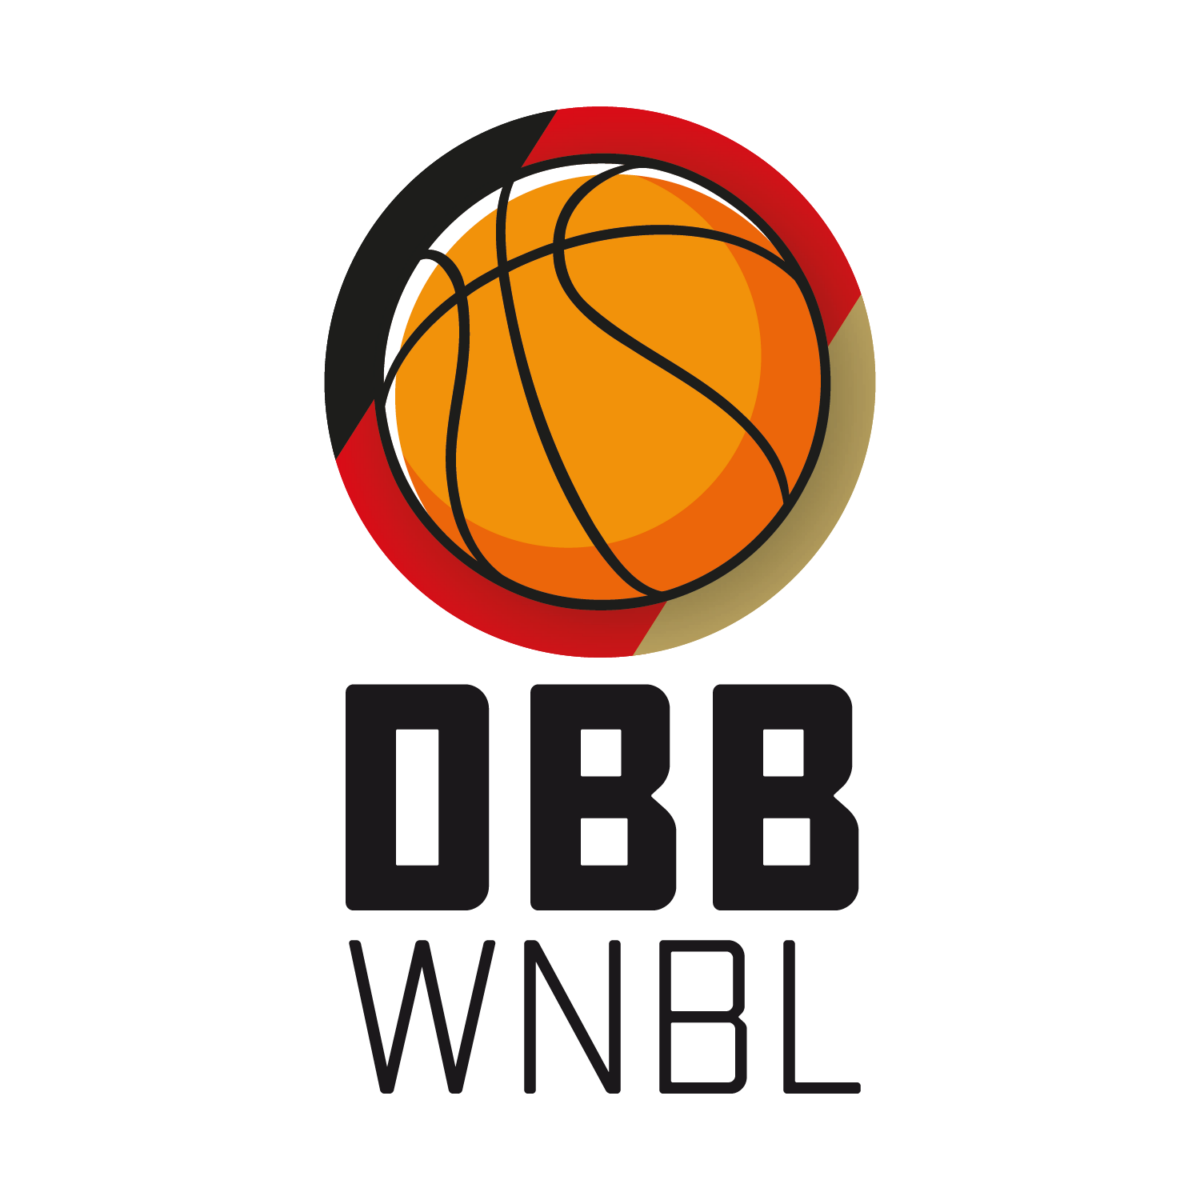 DBB_WNBL_Logo_portrait_positive-1200x1200